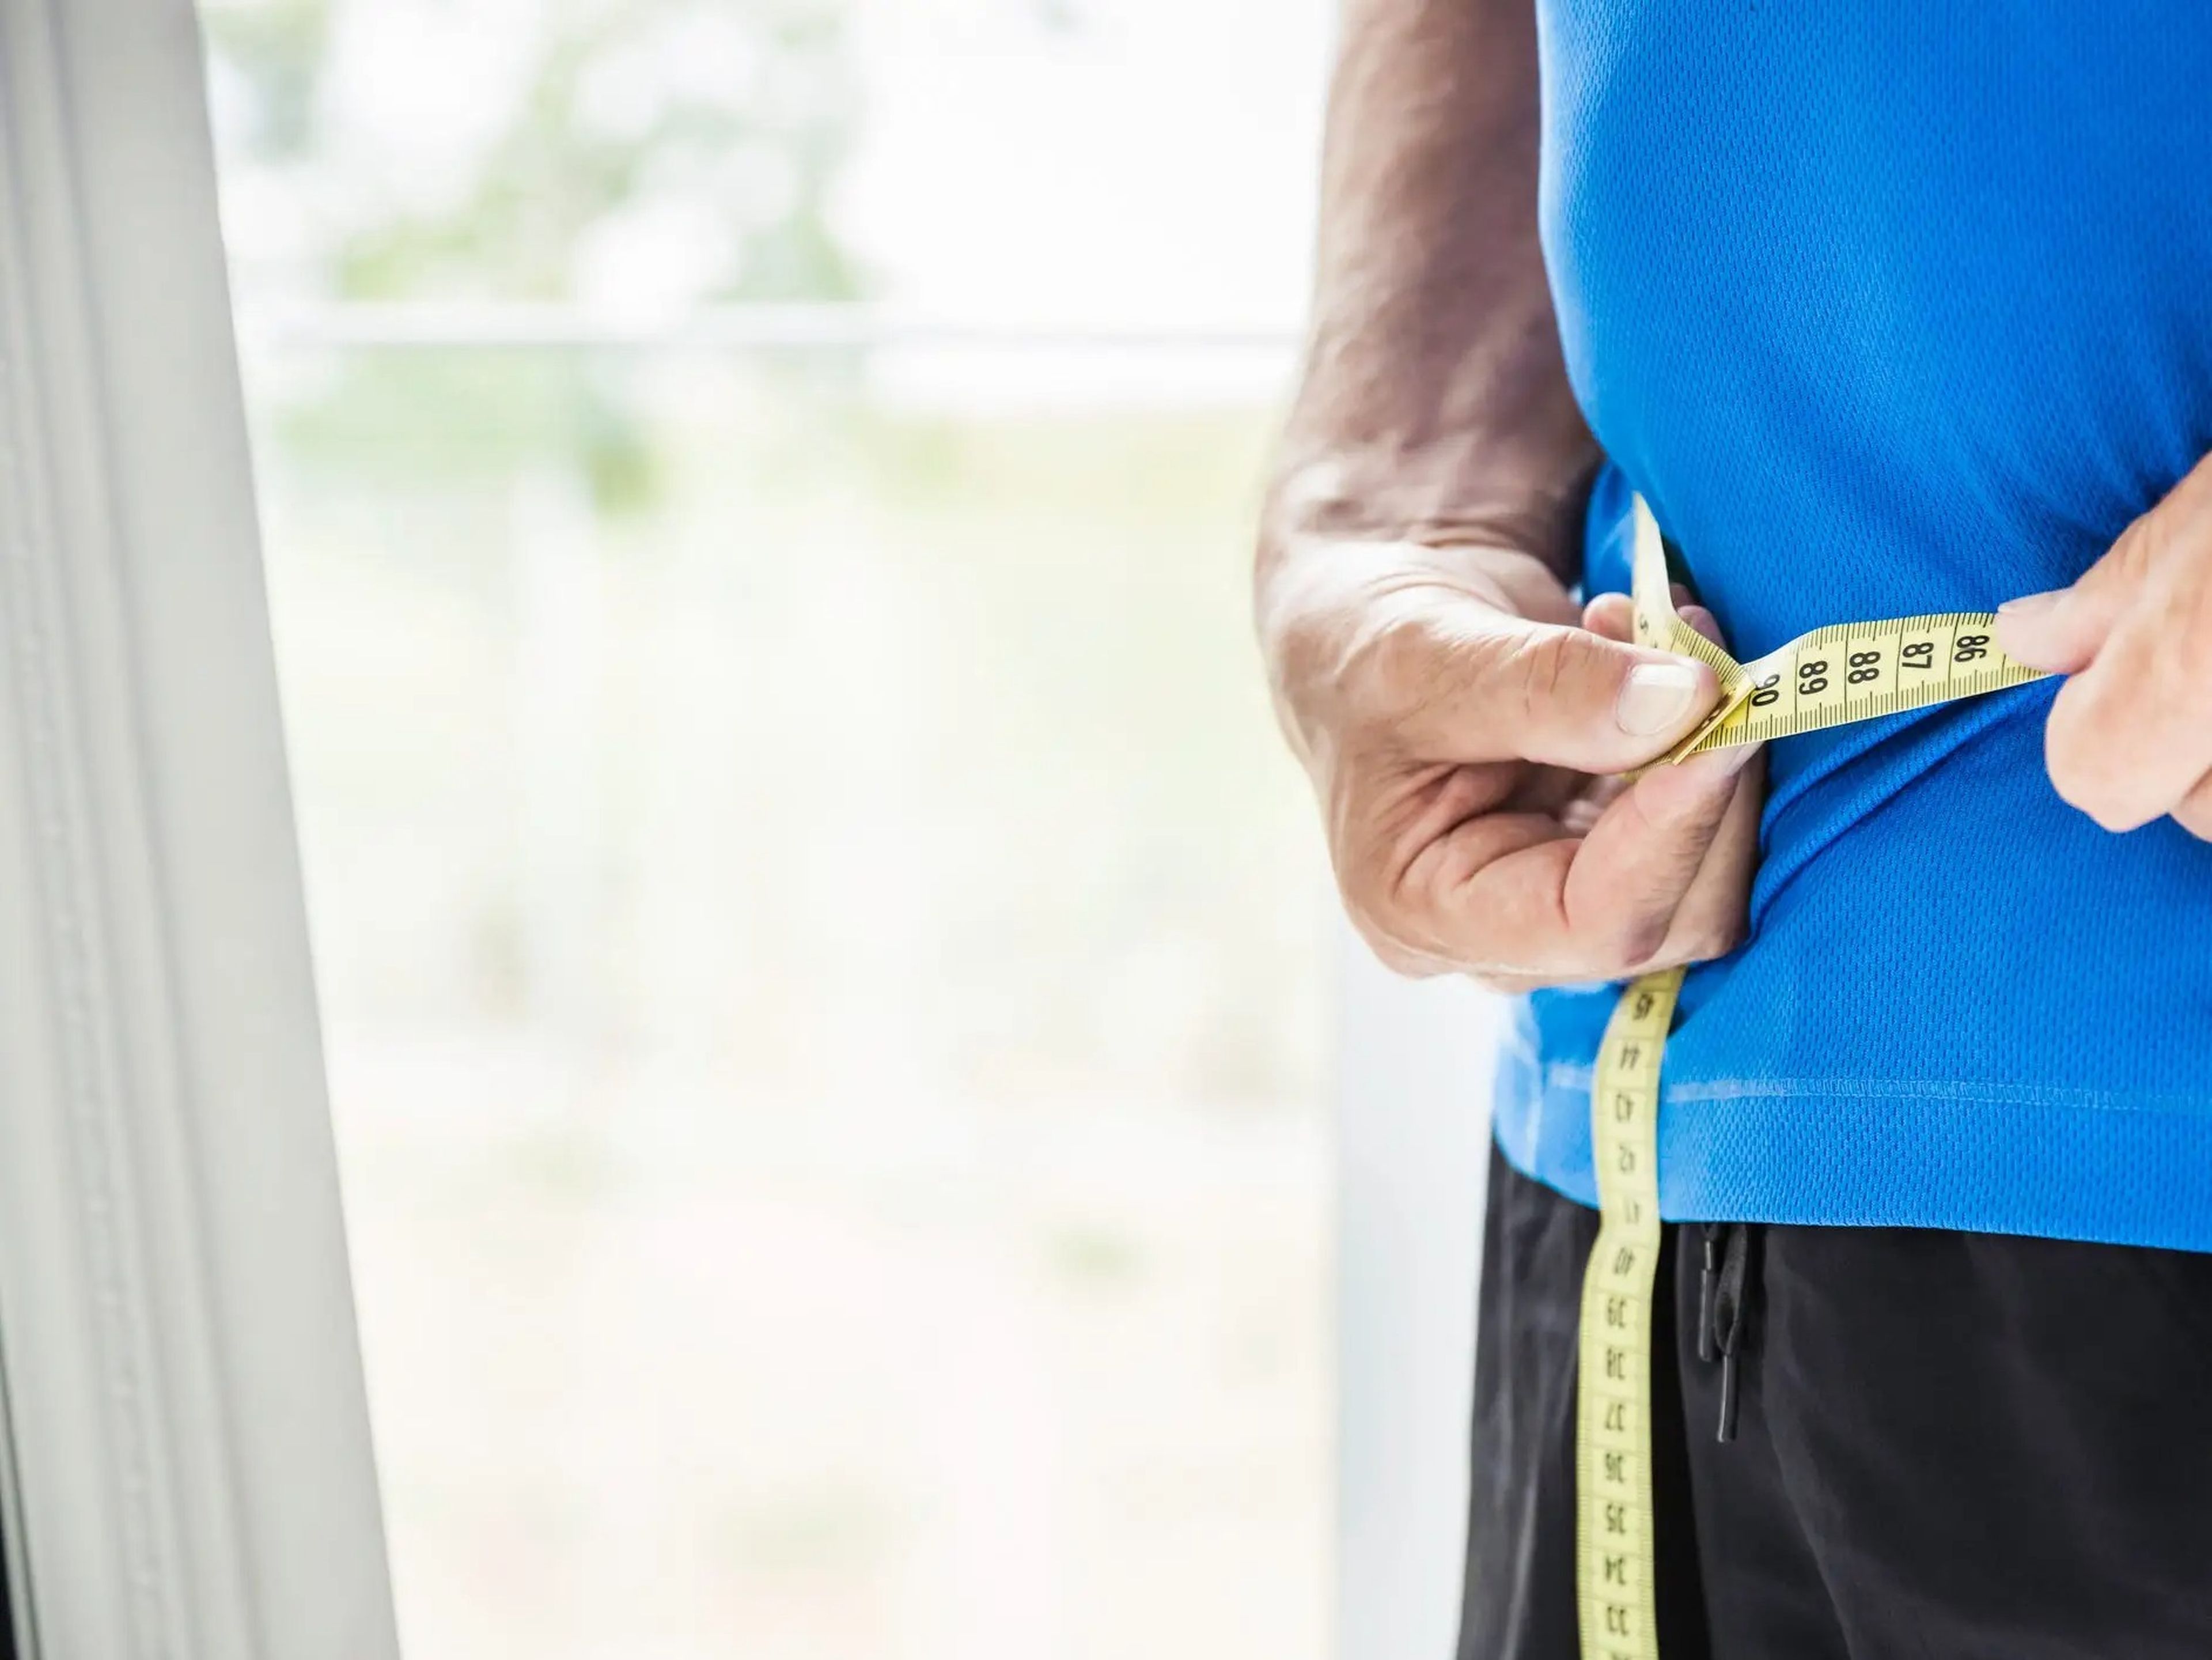 Gestionar tu peso podría ayudar a reducir el riesgo de enfermedades relacionadas con tu corazón.